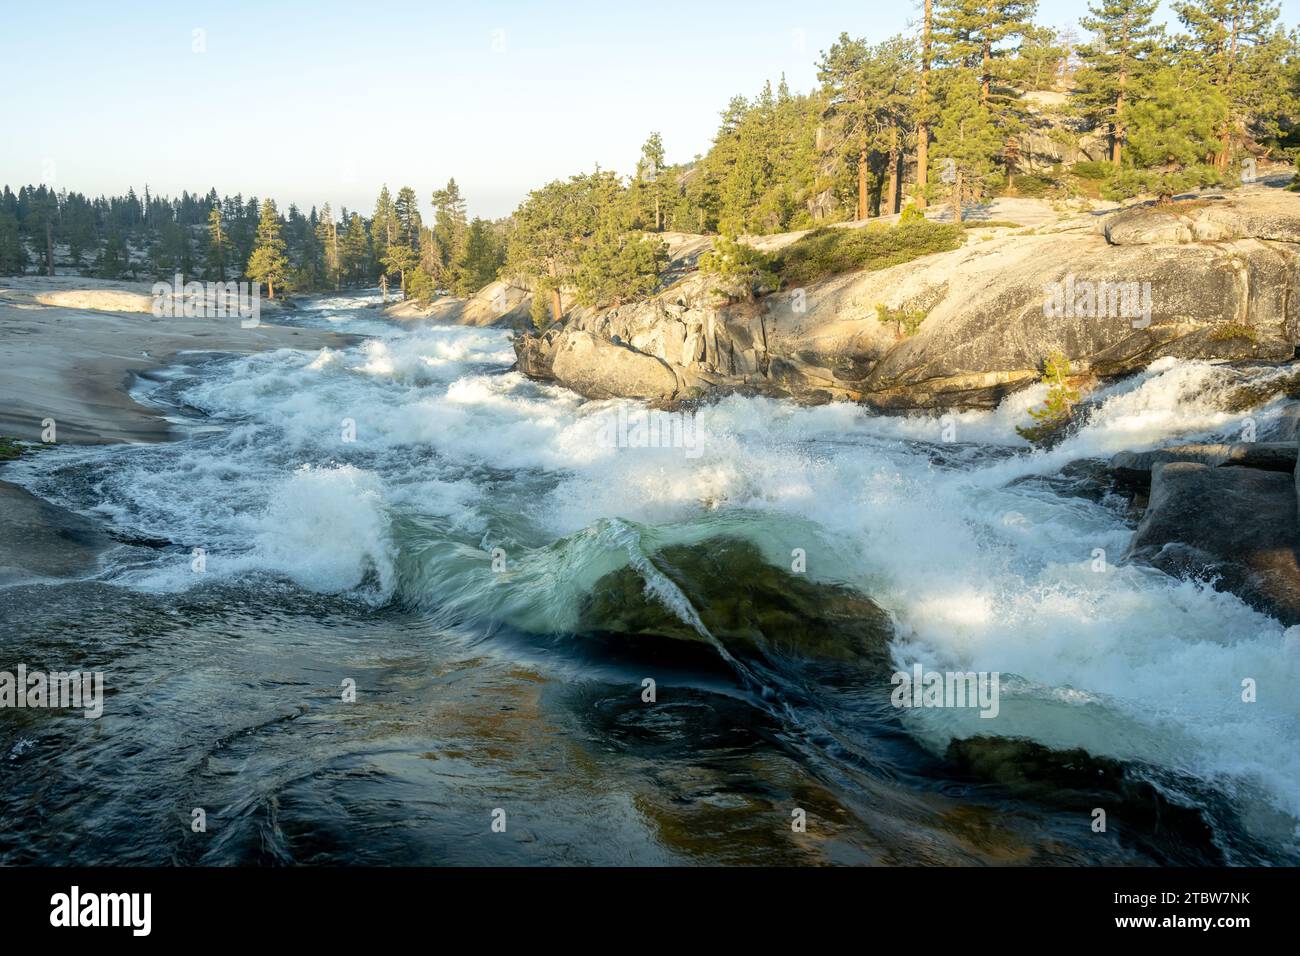 Falls Creek Rushes Over Granite Rocks in Yosemite National Park Stock Photo